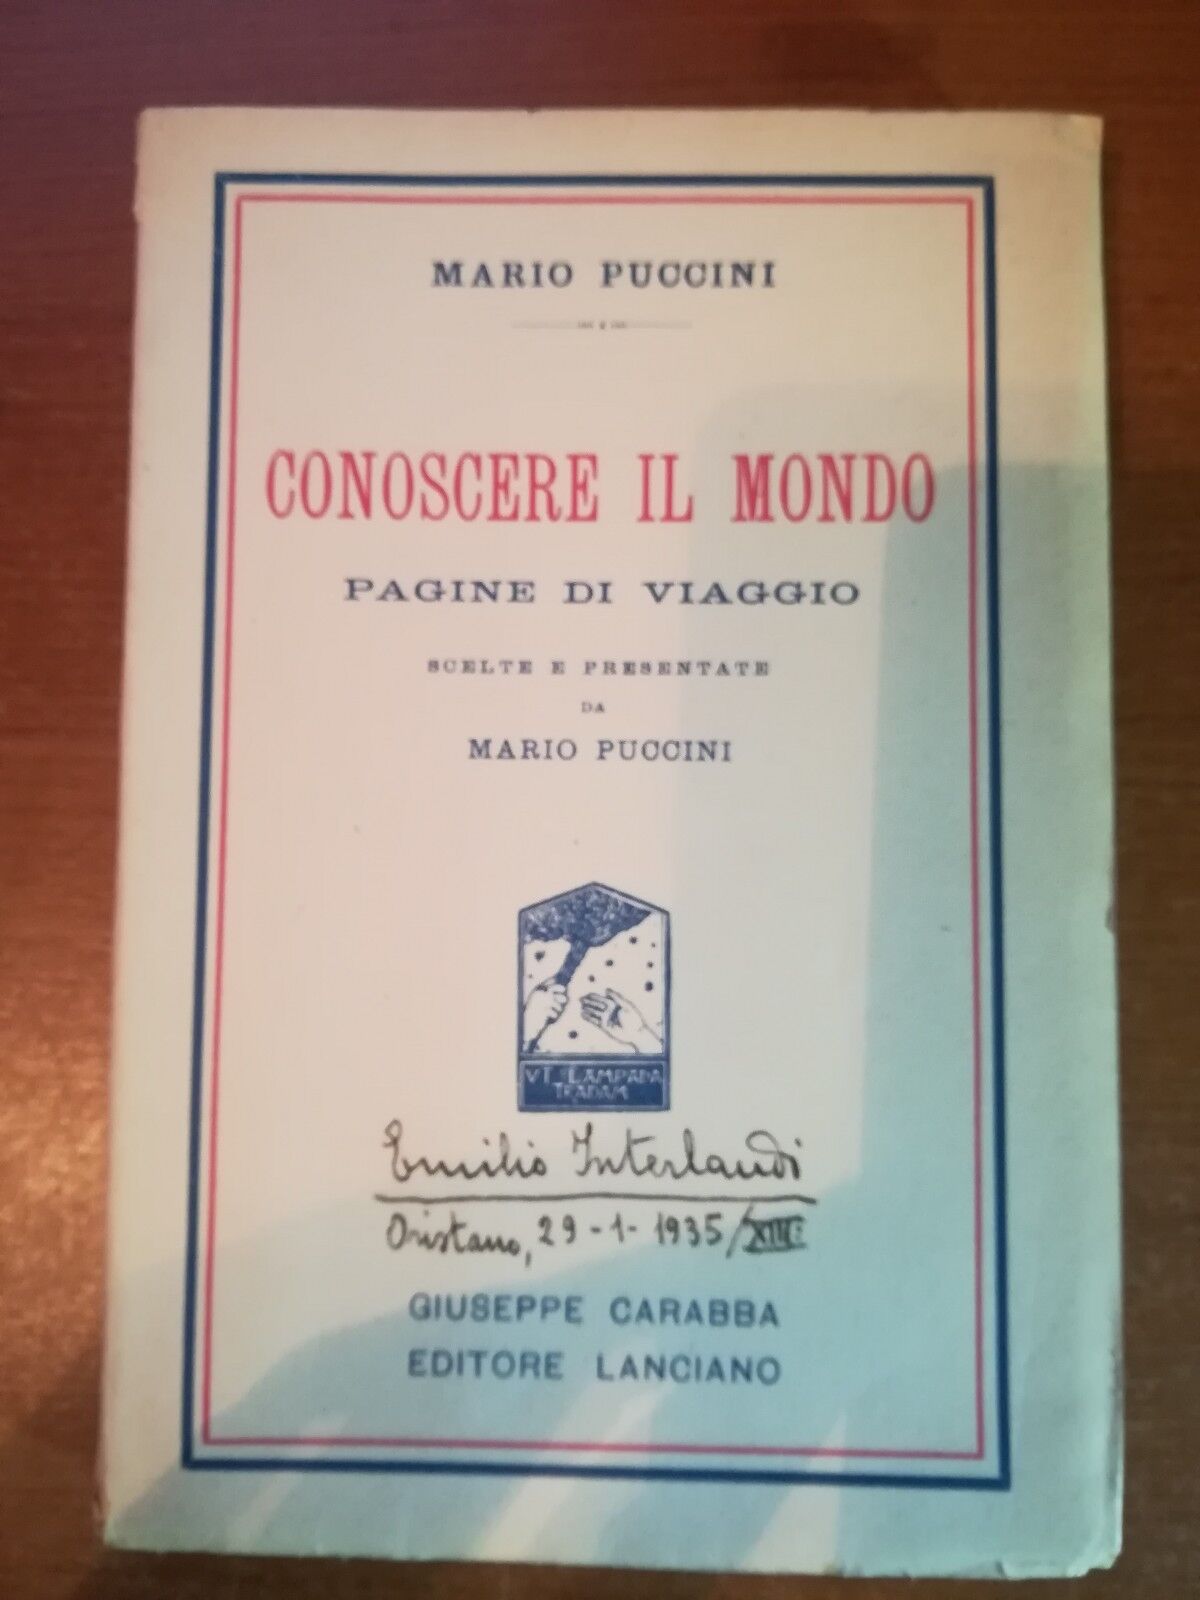 Conoscere il mondo - Mario Puccini - Lanciano - 1935   - M